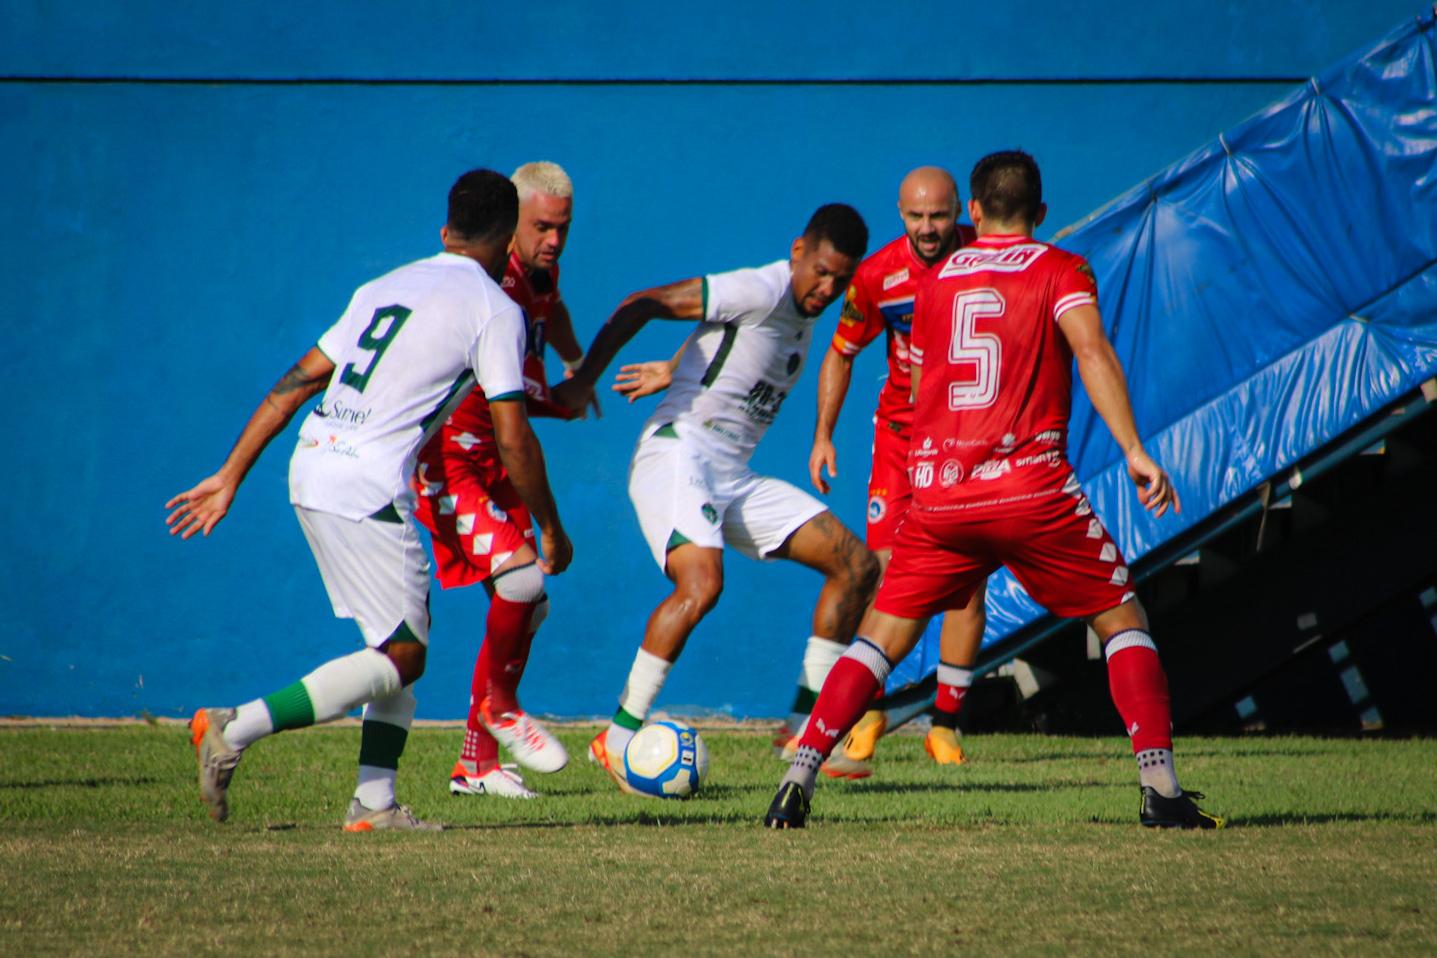 De virada, Manaus FC vence Porto Velho